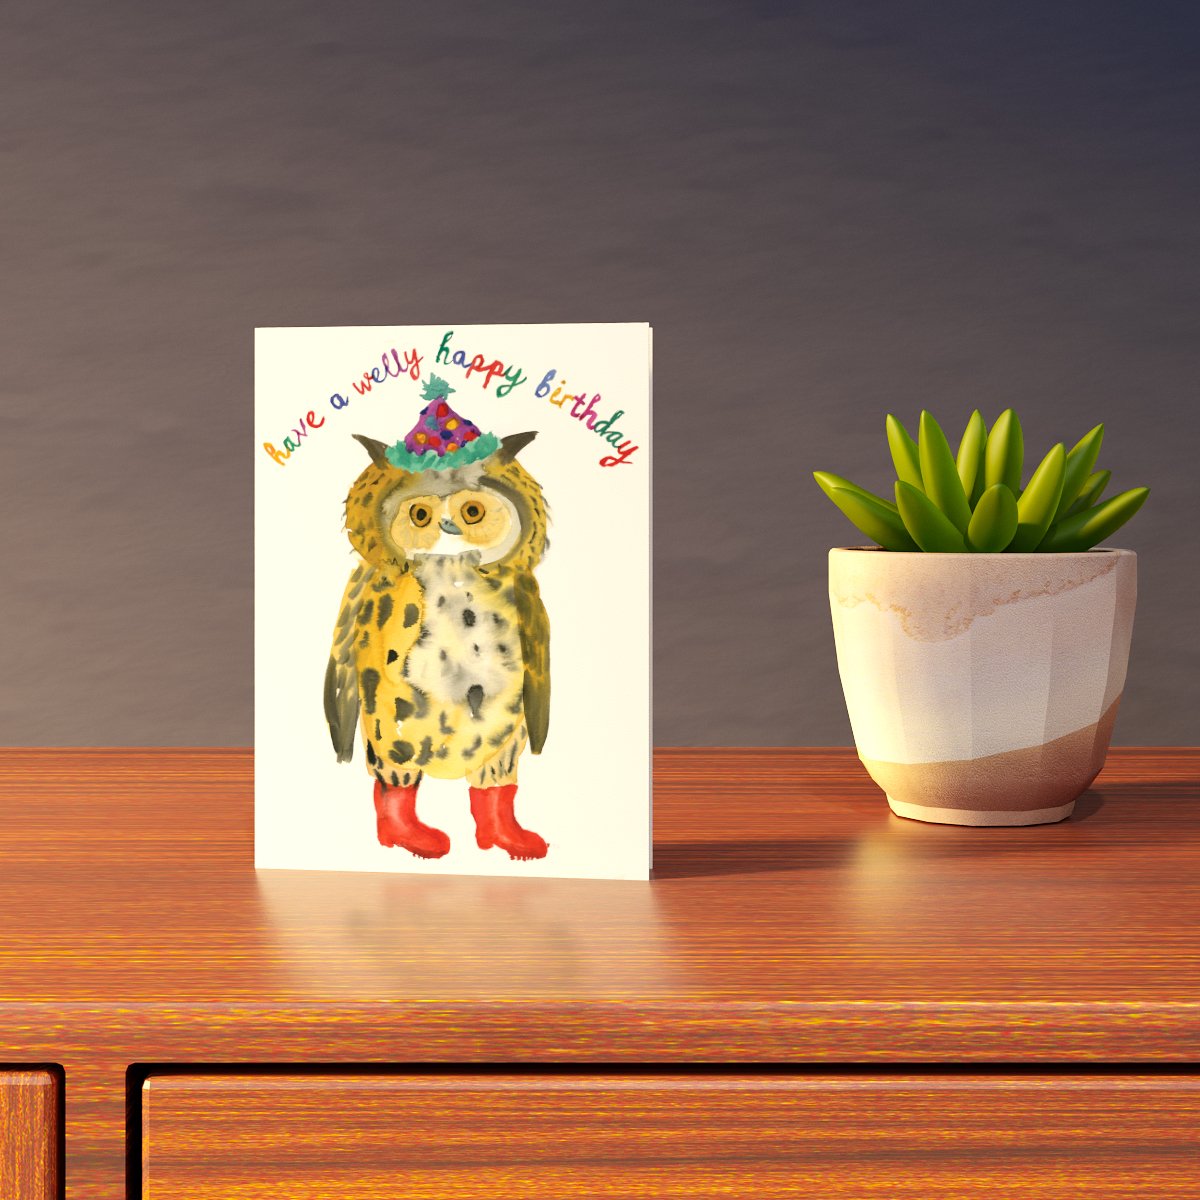 Welly Happy Birthday Card